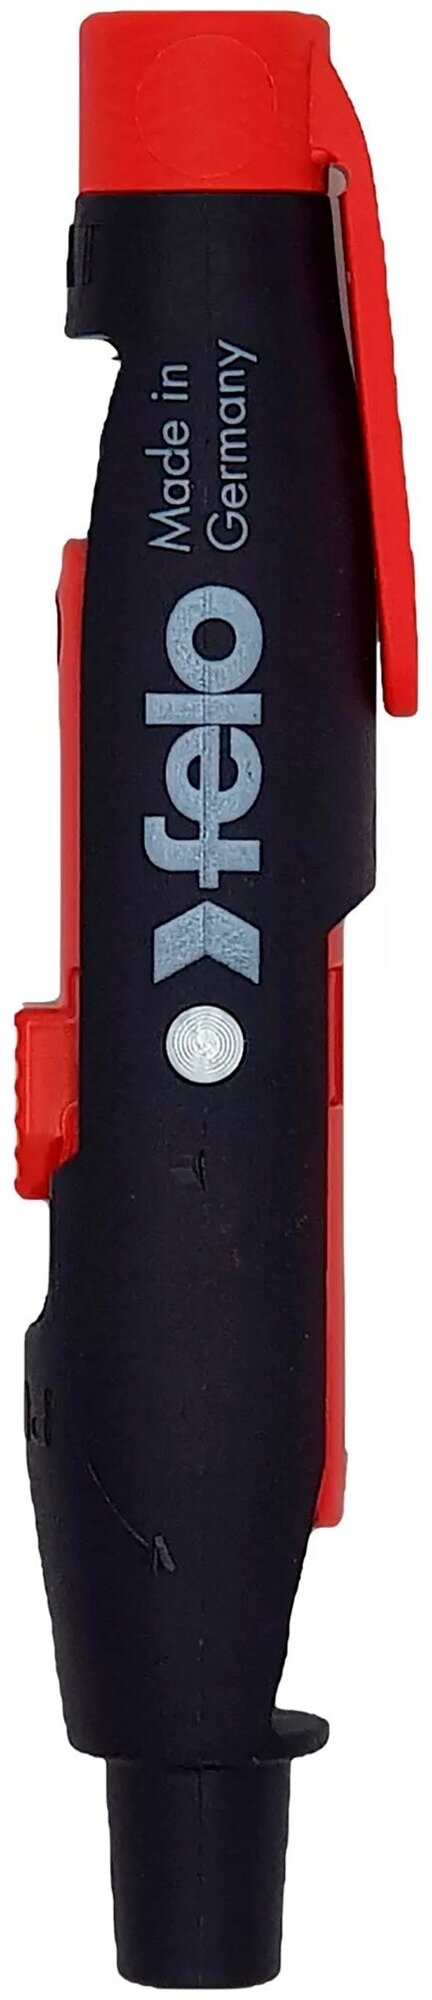 Универсальный ключ для ящиков Felo - фото №2